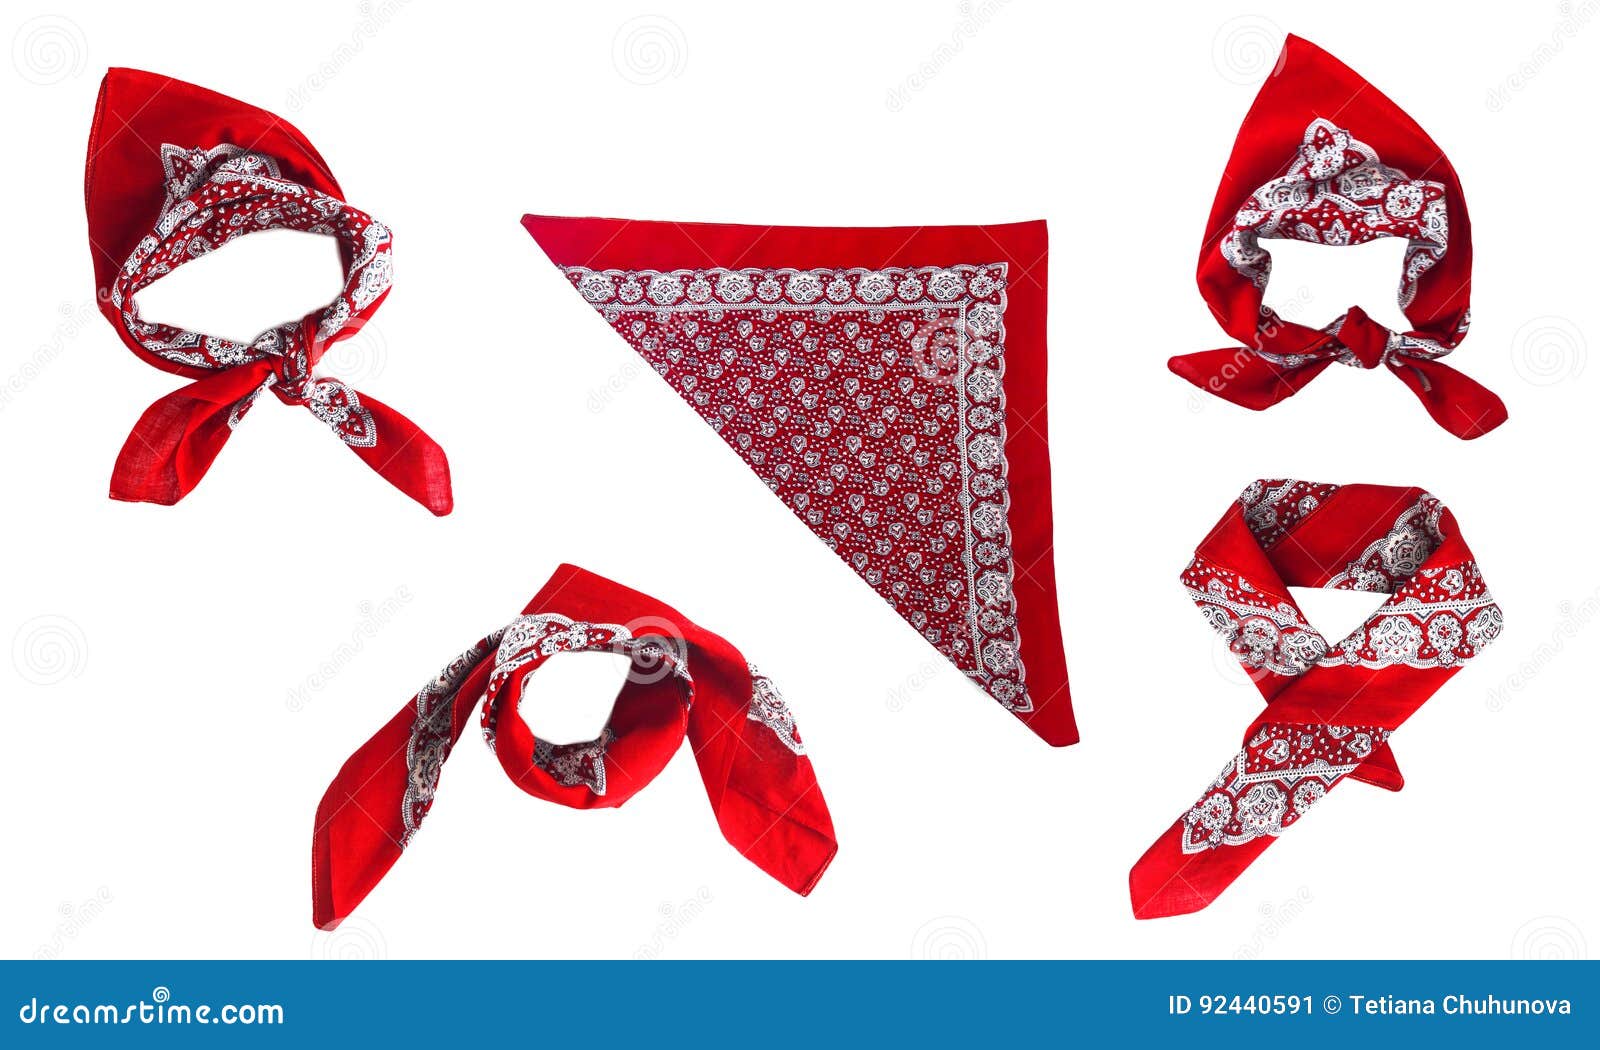 Pañuelo Rojo Del Pañuelo Con Un Modelo, Aislado Foto de archivo